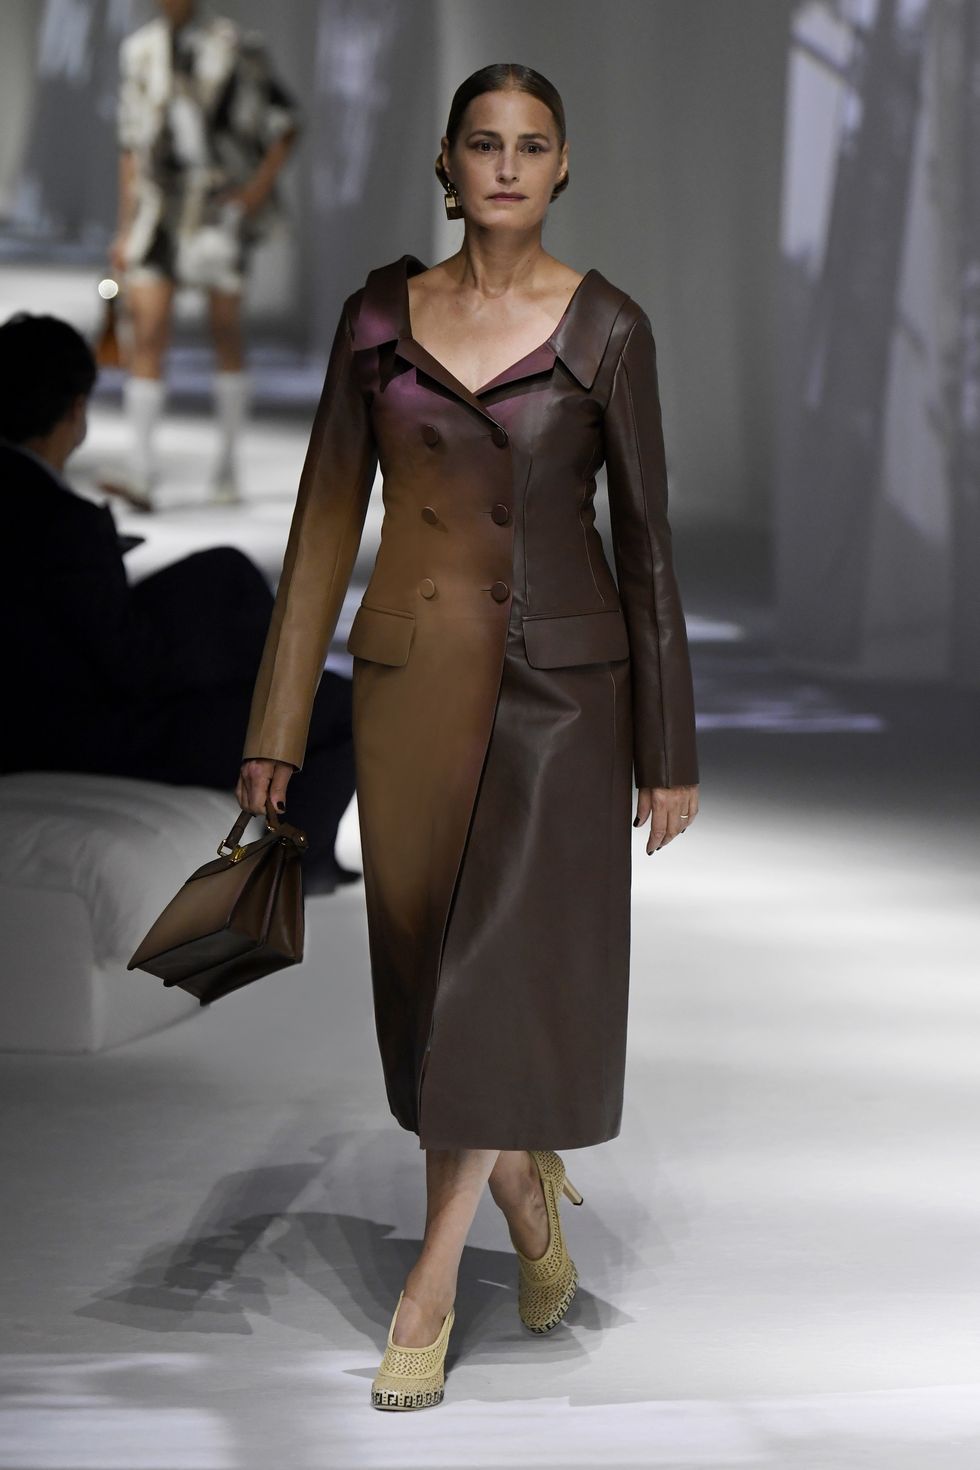 Fendi at Milan Fashion Week Spring 2021